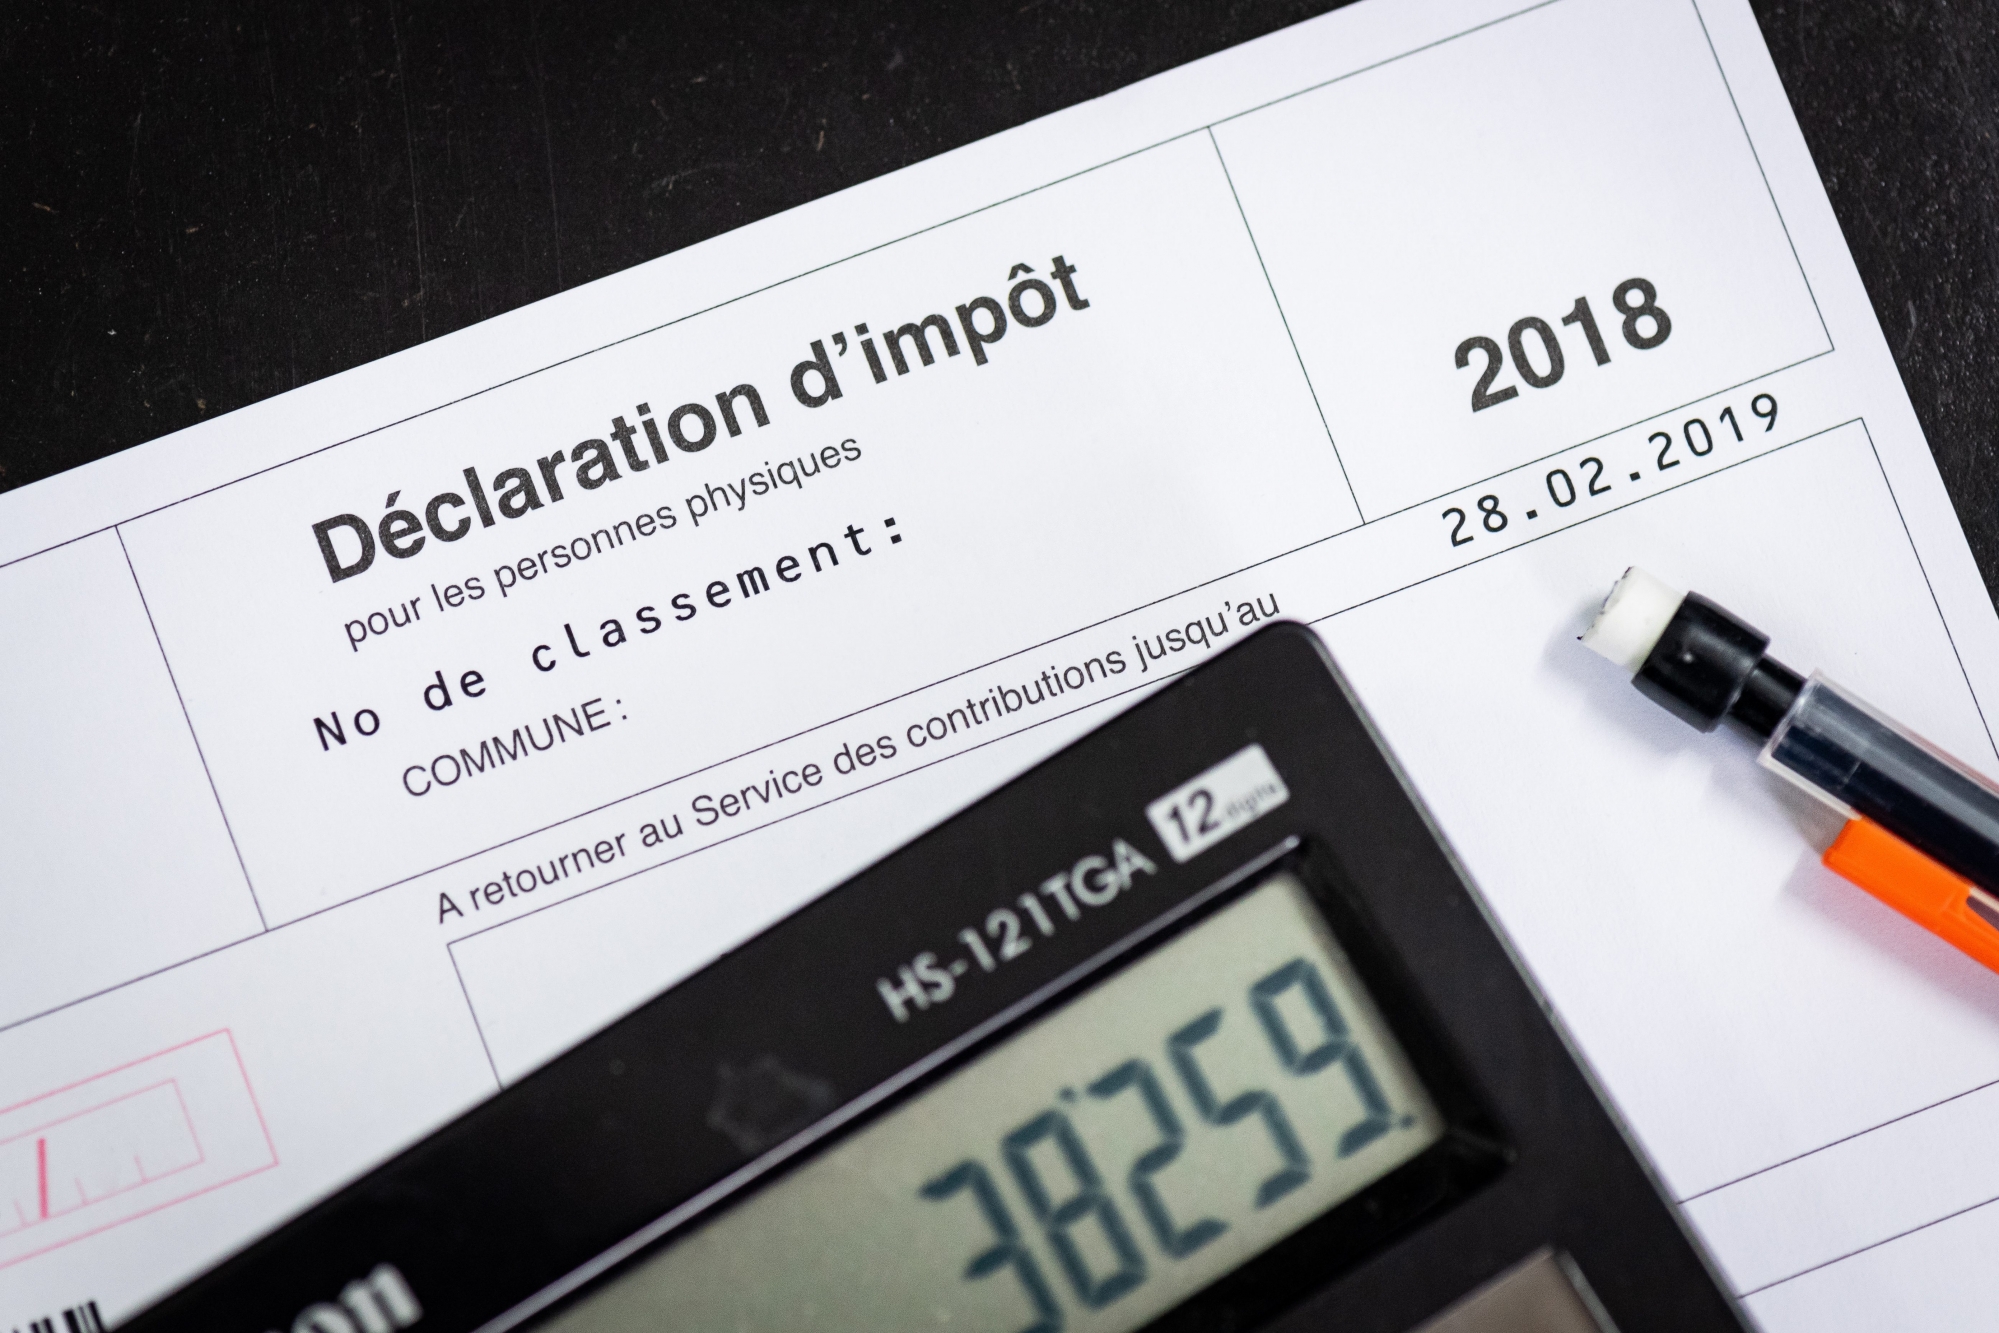 Taxation 2018 
Service des contributions. 

Neuchatel, le 8 fevrier 2019
Photo: Lucas Vuitel SERVICE DES CONTRIBUTION